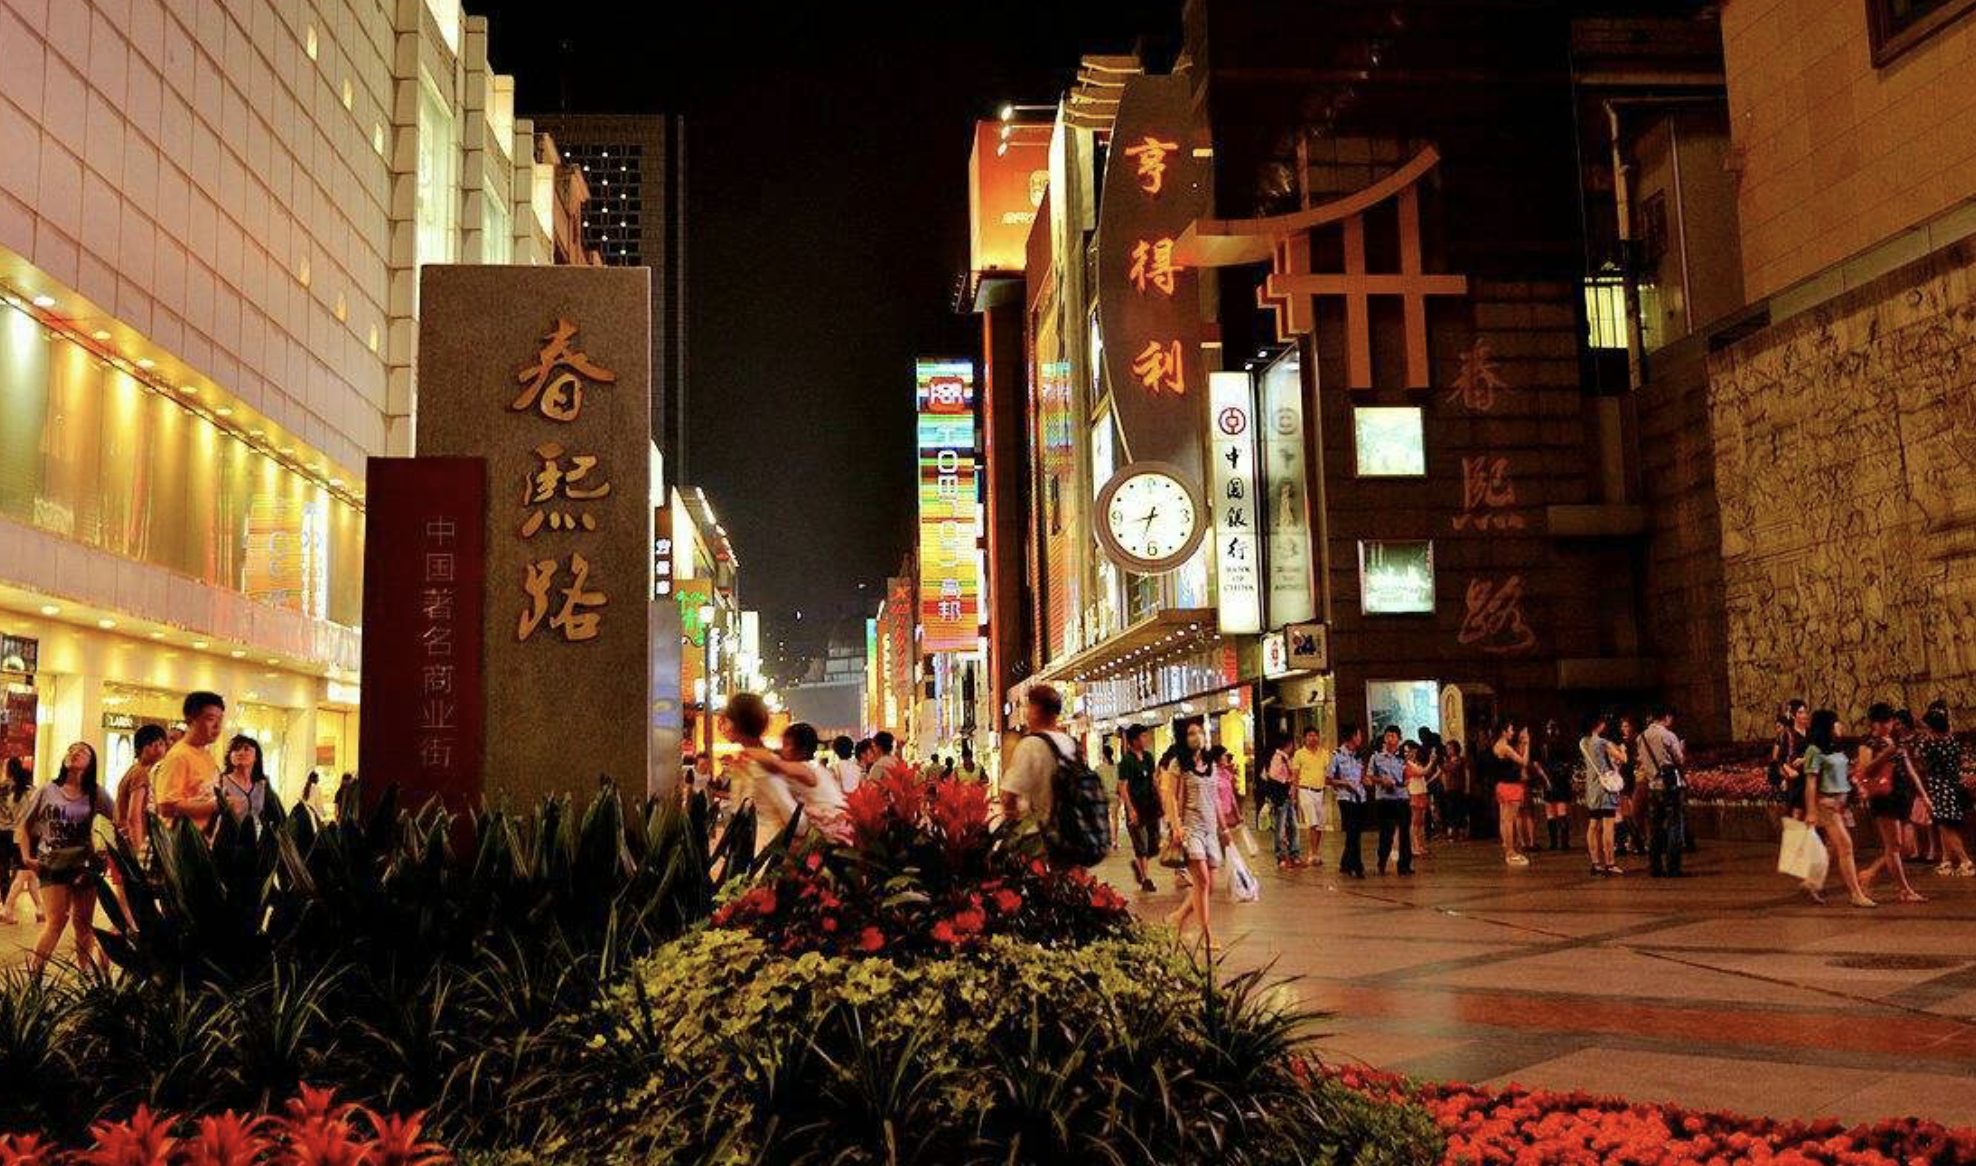 原创中国十大城市步行街,你旅途中最爱逛的是那个